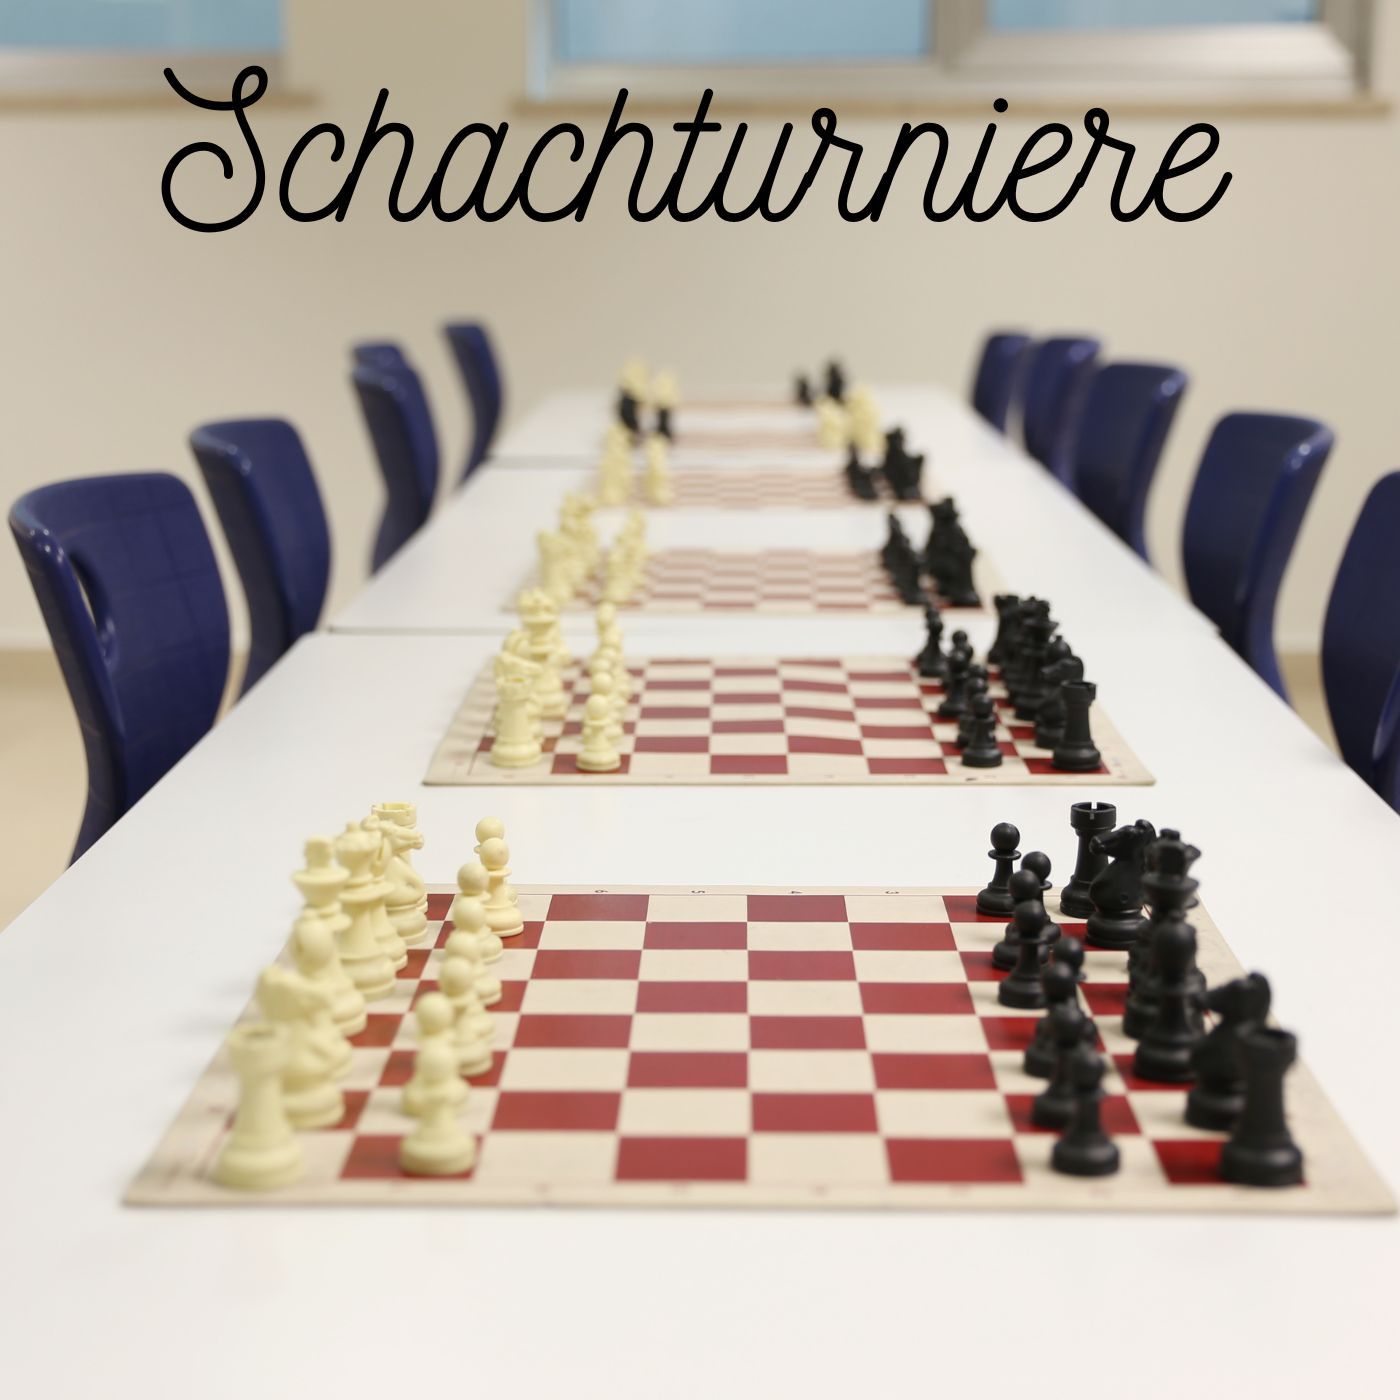 Schachtipps und Regeln - Schach lernen, spielen, trainieren